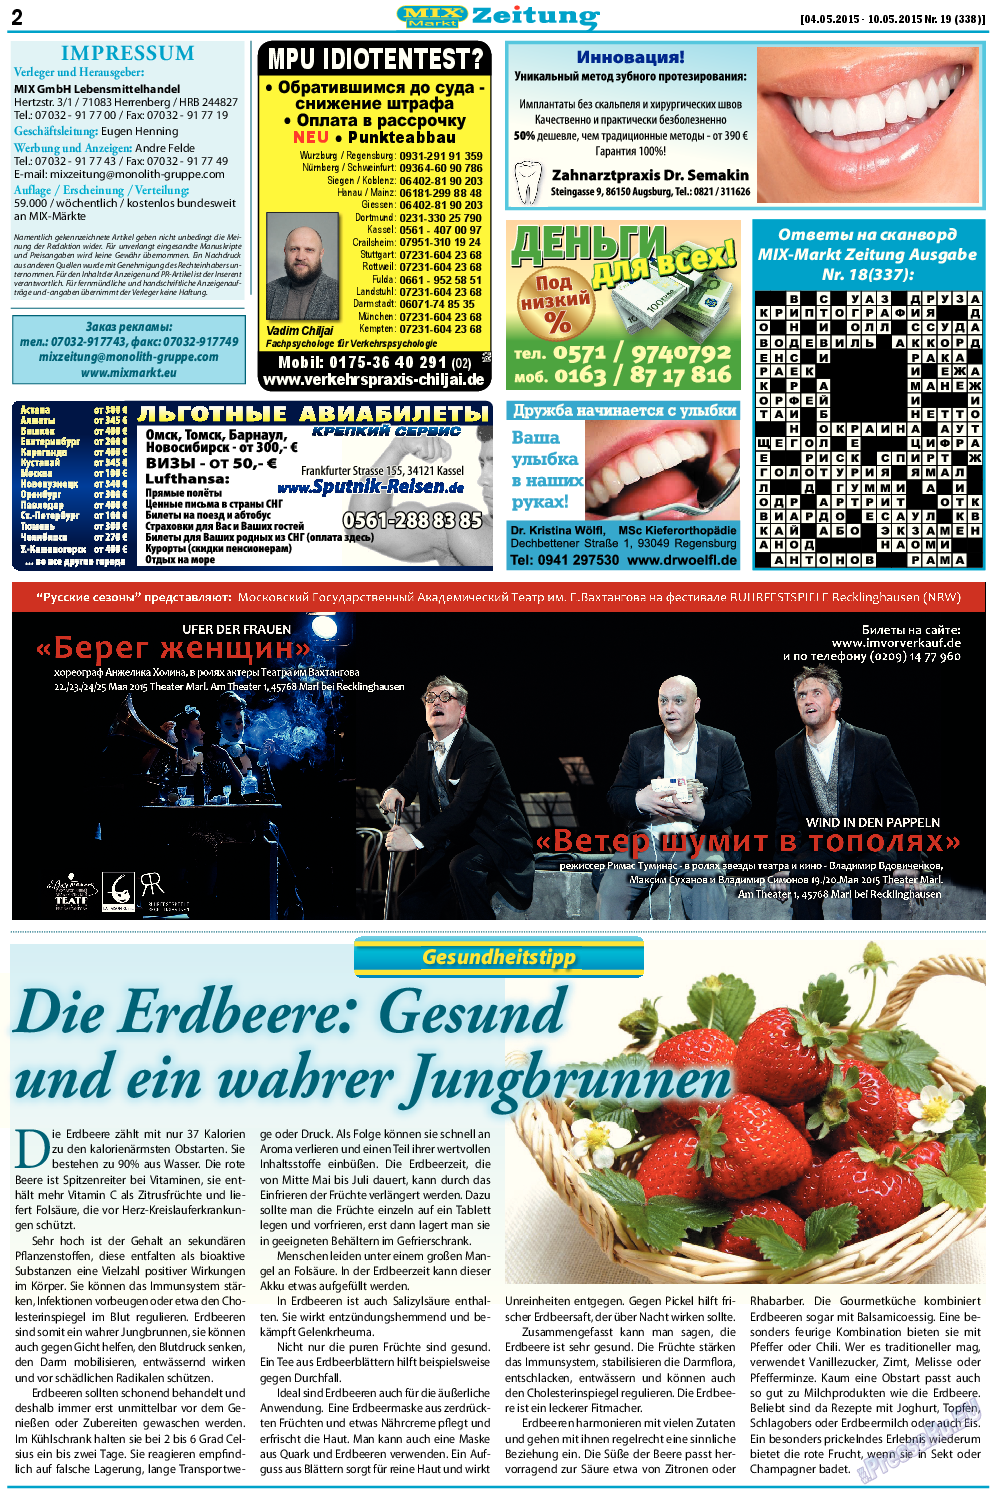 MIX-Markt Zeitung, газета. 2015 №19 стр.2